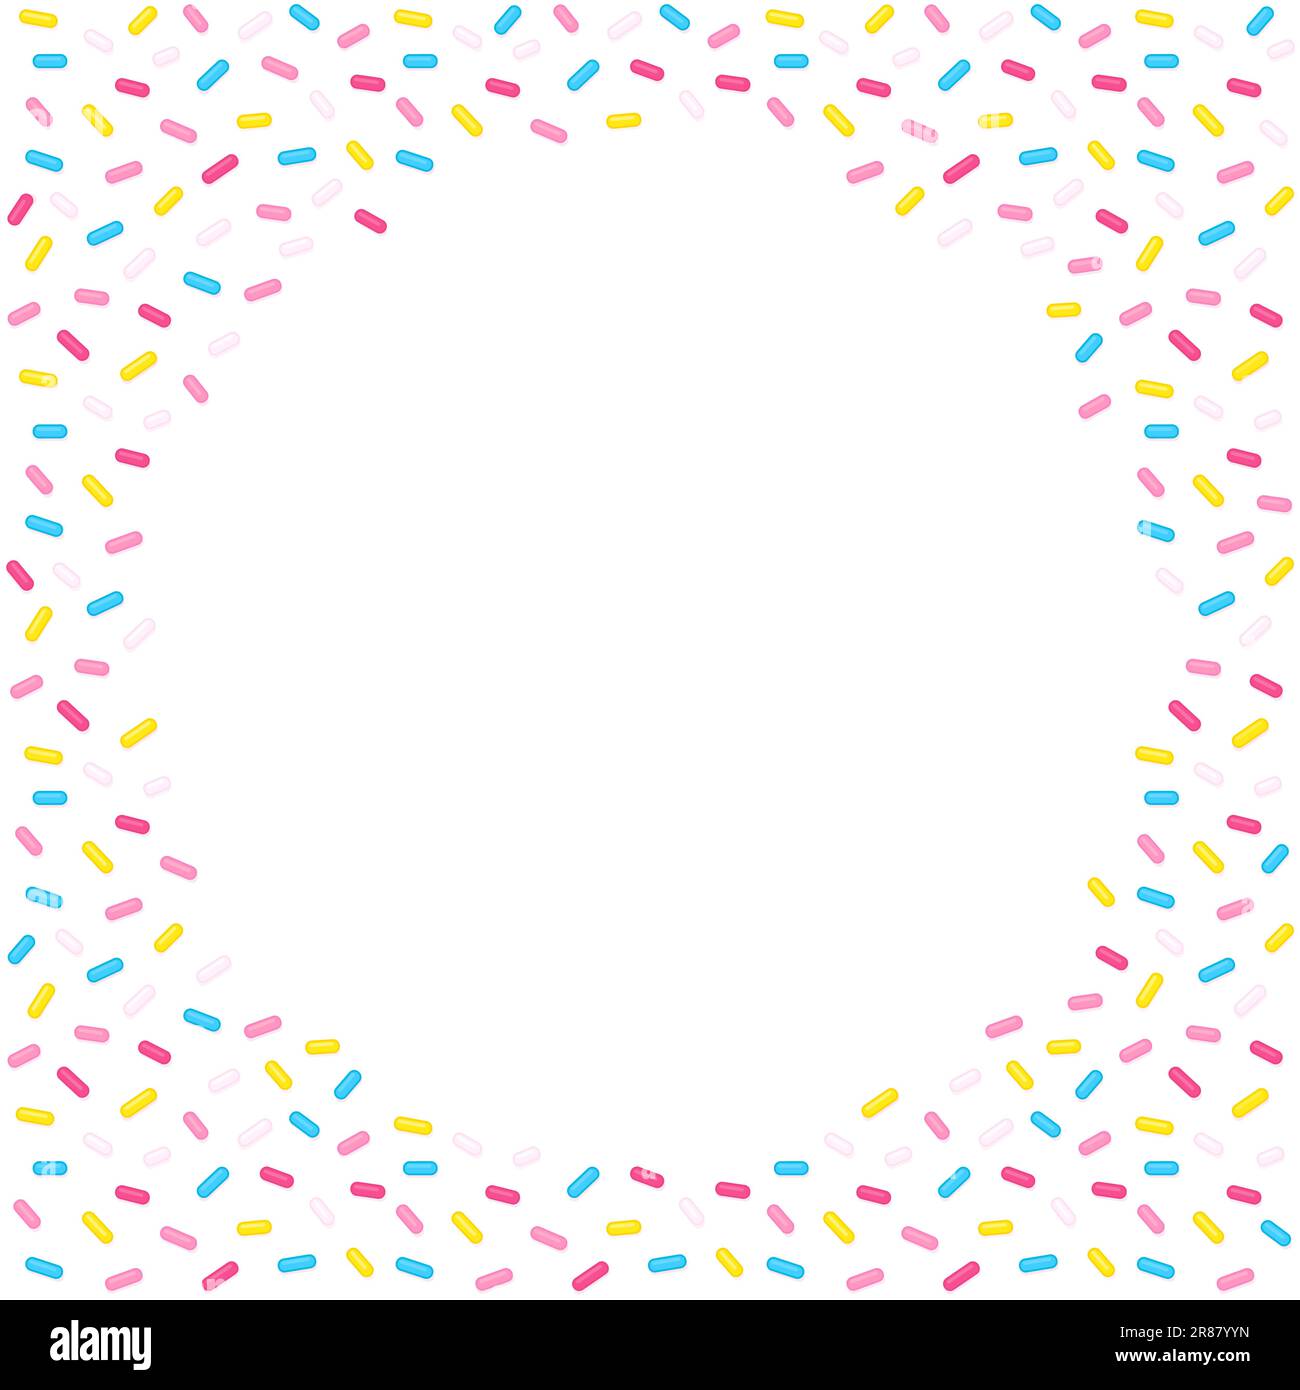 Zucker streut kreisförmigen Rahmen auf weißem Hintergrund. Donut-Glasur oder Geburtstagskuchendekoration. Lustiges Cartoon-Vektordesign für Webbanner oder Poster. Stock Vektor